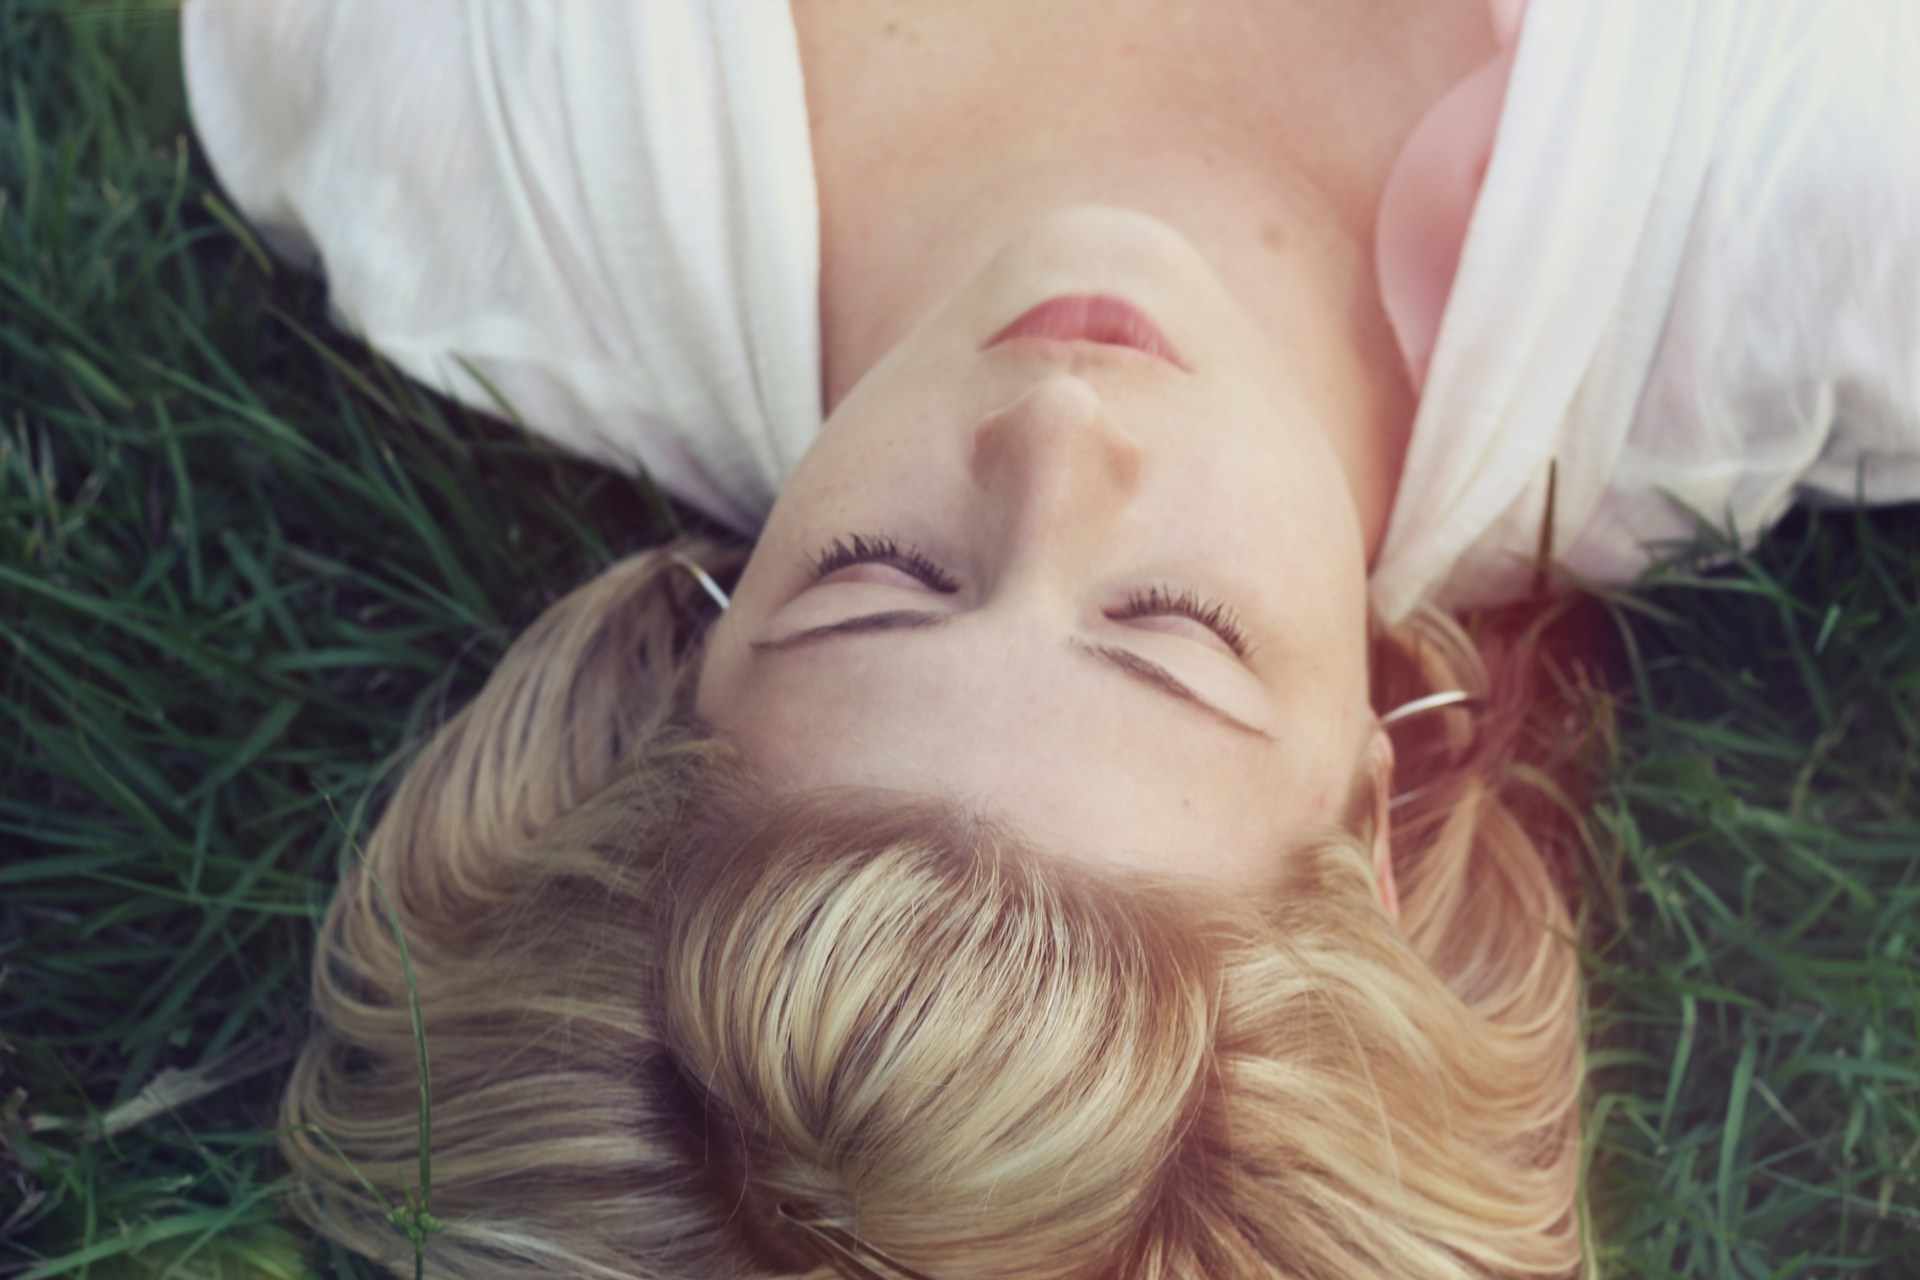 Vue de haut de la tête d'une jeune femme blonde dormant dans l'herbe - Photo de Jacob Townsend sur https://unsplash.com/fr/photos/femme-couchee-sur-des-herbes-vertes-OdvNB15f7Uo